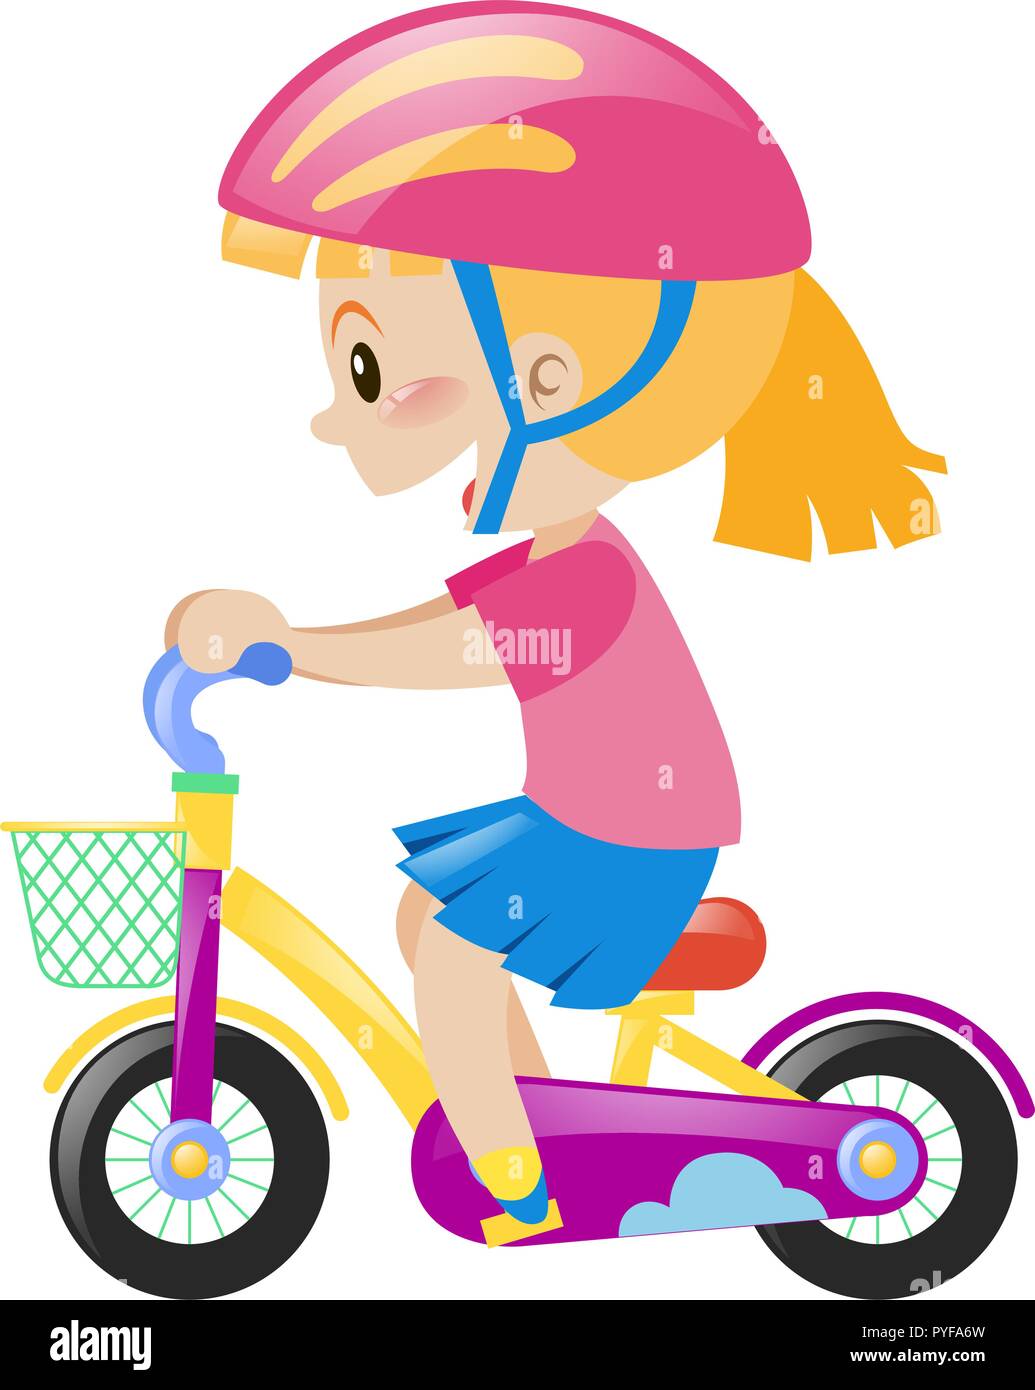 Little girl wearing pink helmet riding bike illustration Stock Vector